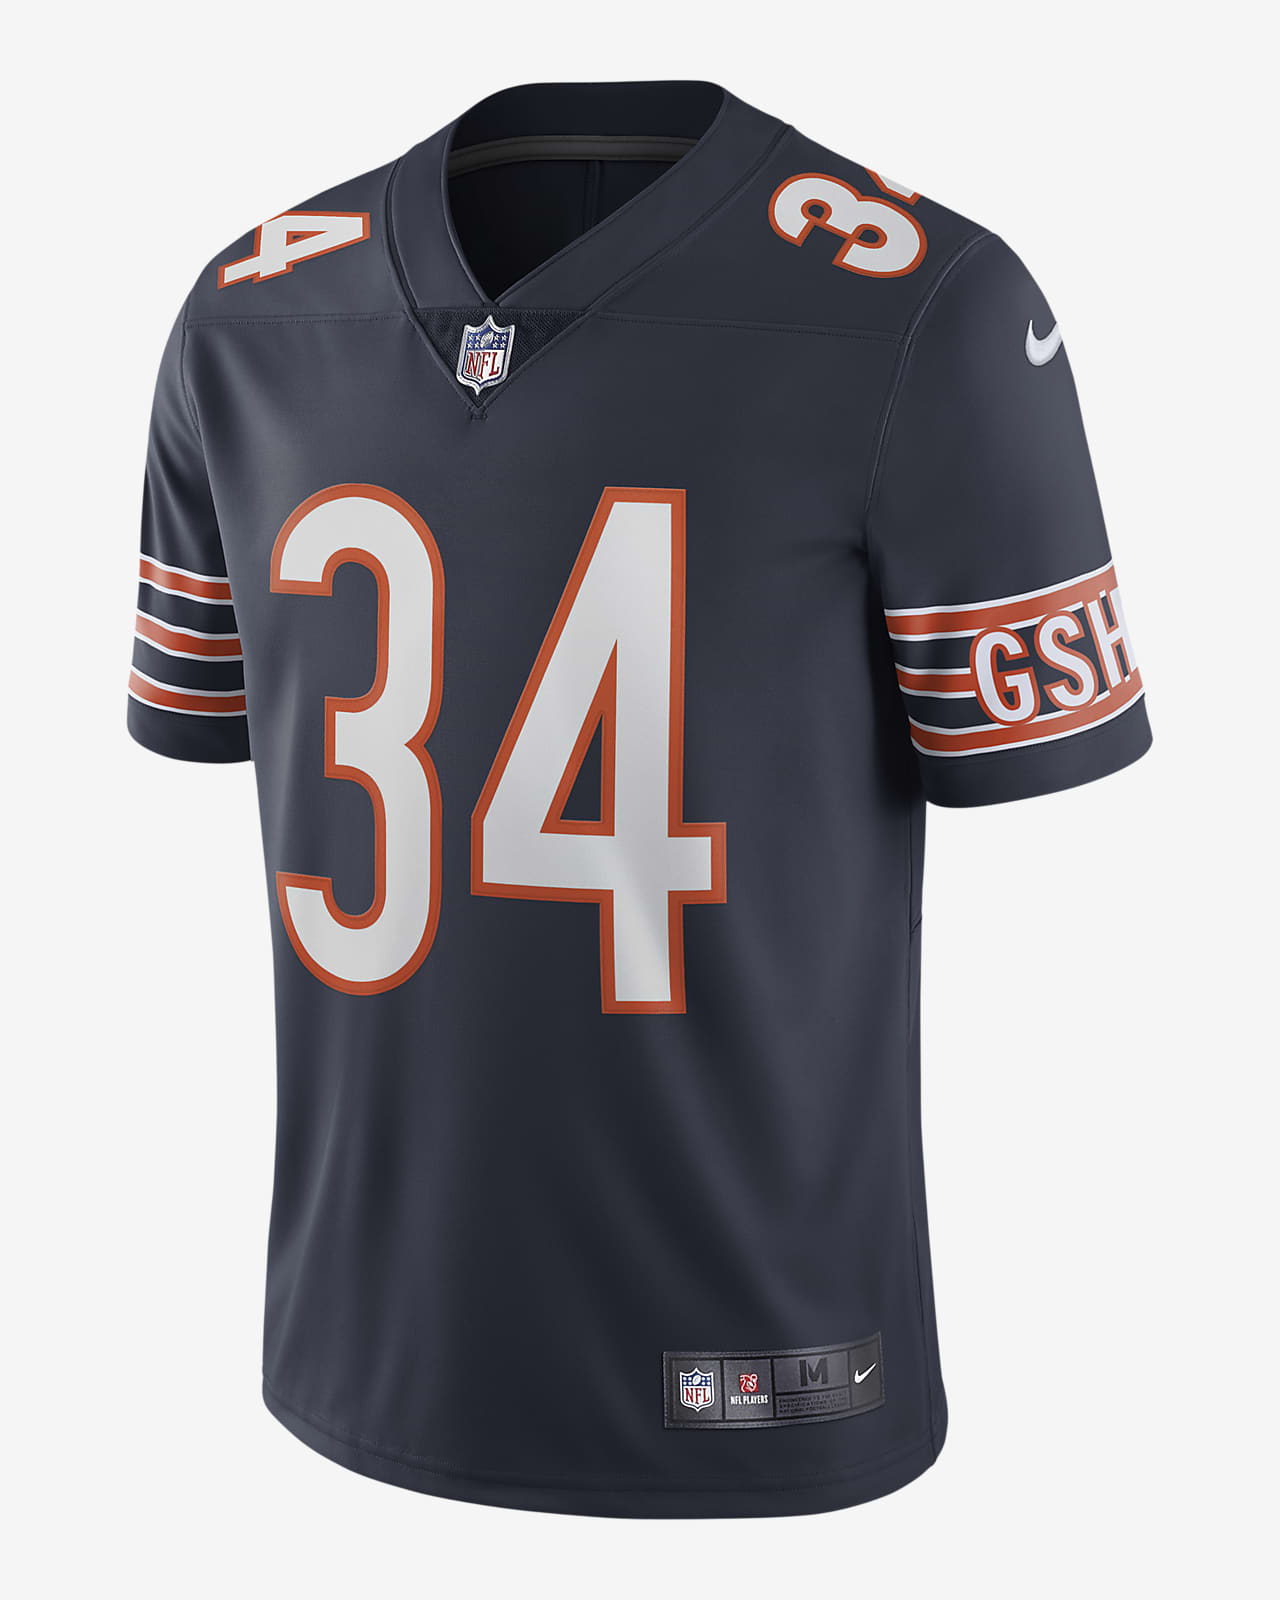 Camiseta de fútbol edición limitada para hombre NFL Chicago Bears Nike Untouchable (Walter Payton). Nike.com